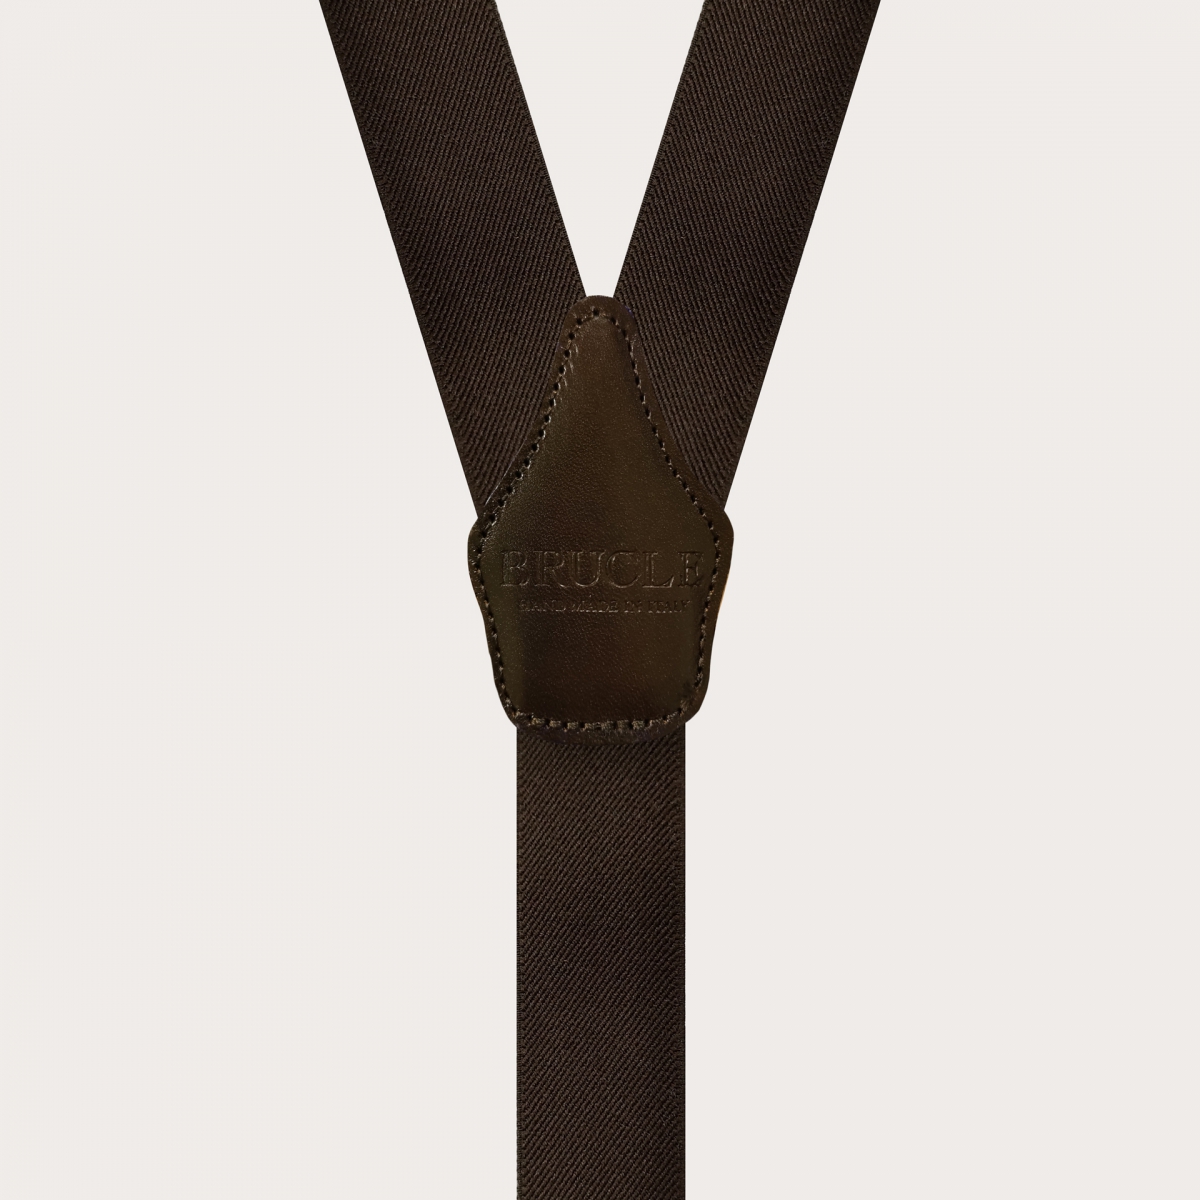 BRUCLE Unisex nickel free suspenders, dark brown